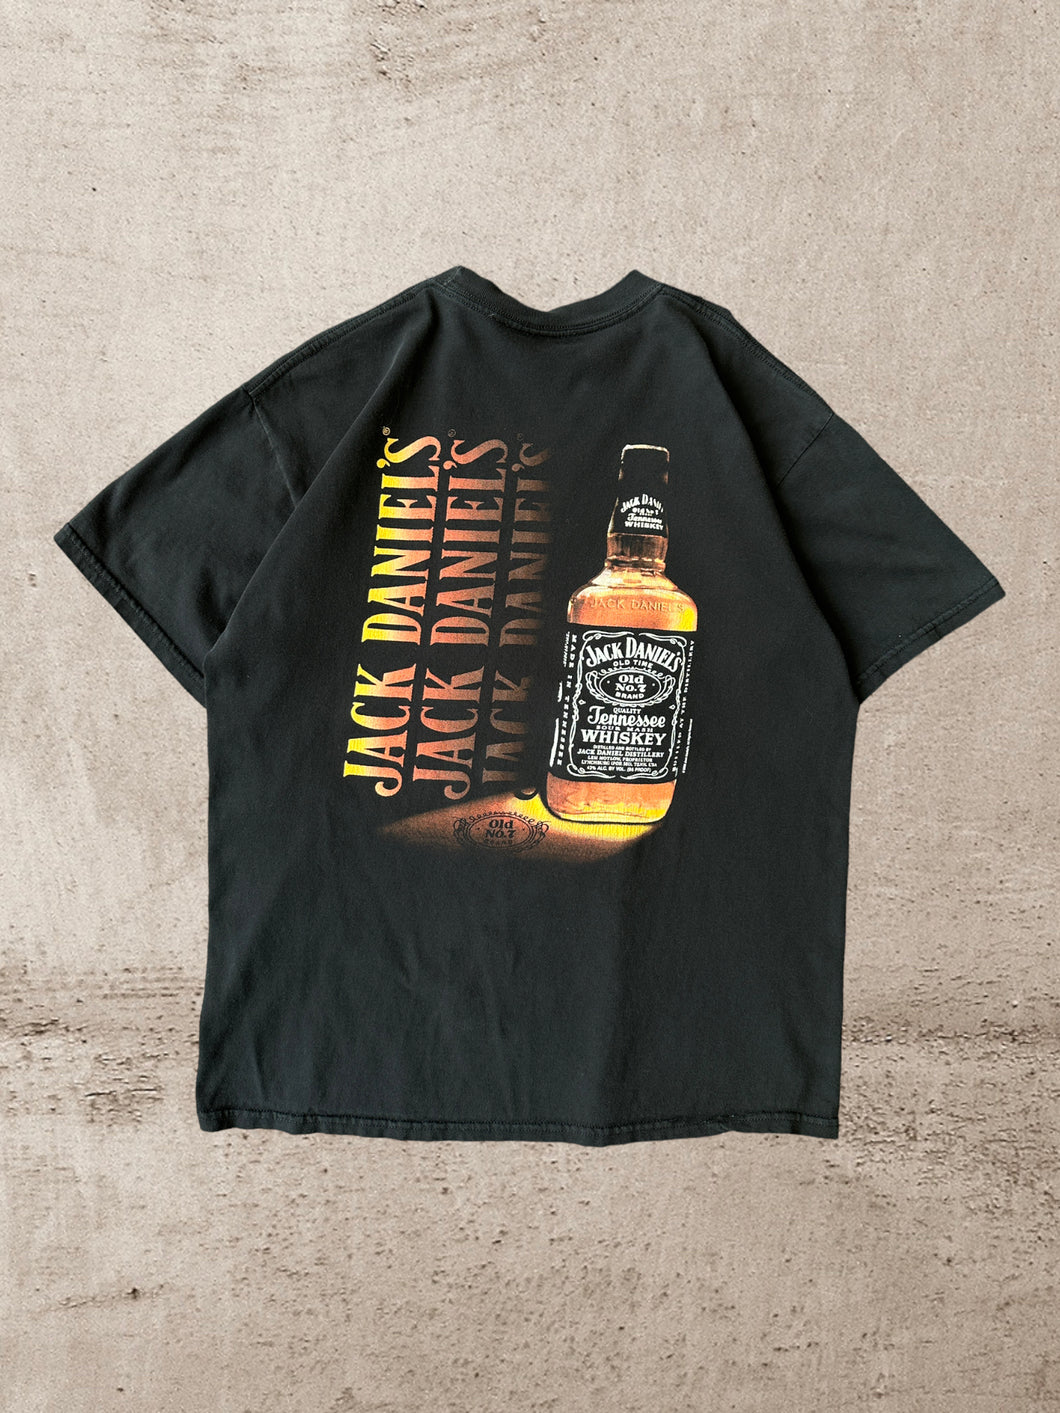 Vintage Jack Daniels Graphic T-Shirt - Large